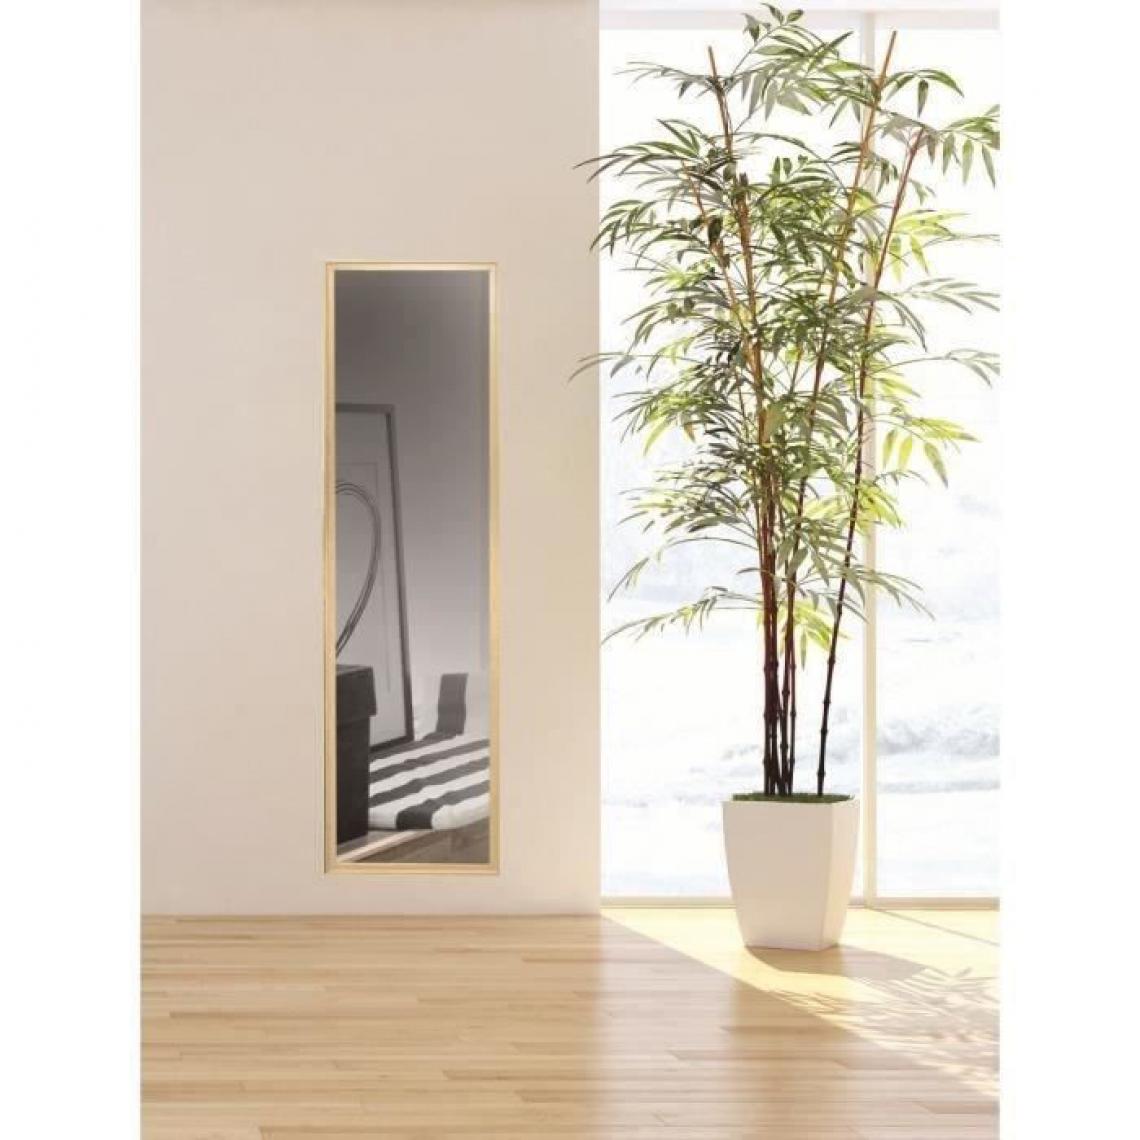 Cstore - Miroir 30x120 décor bois cérusé - Miroirs